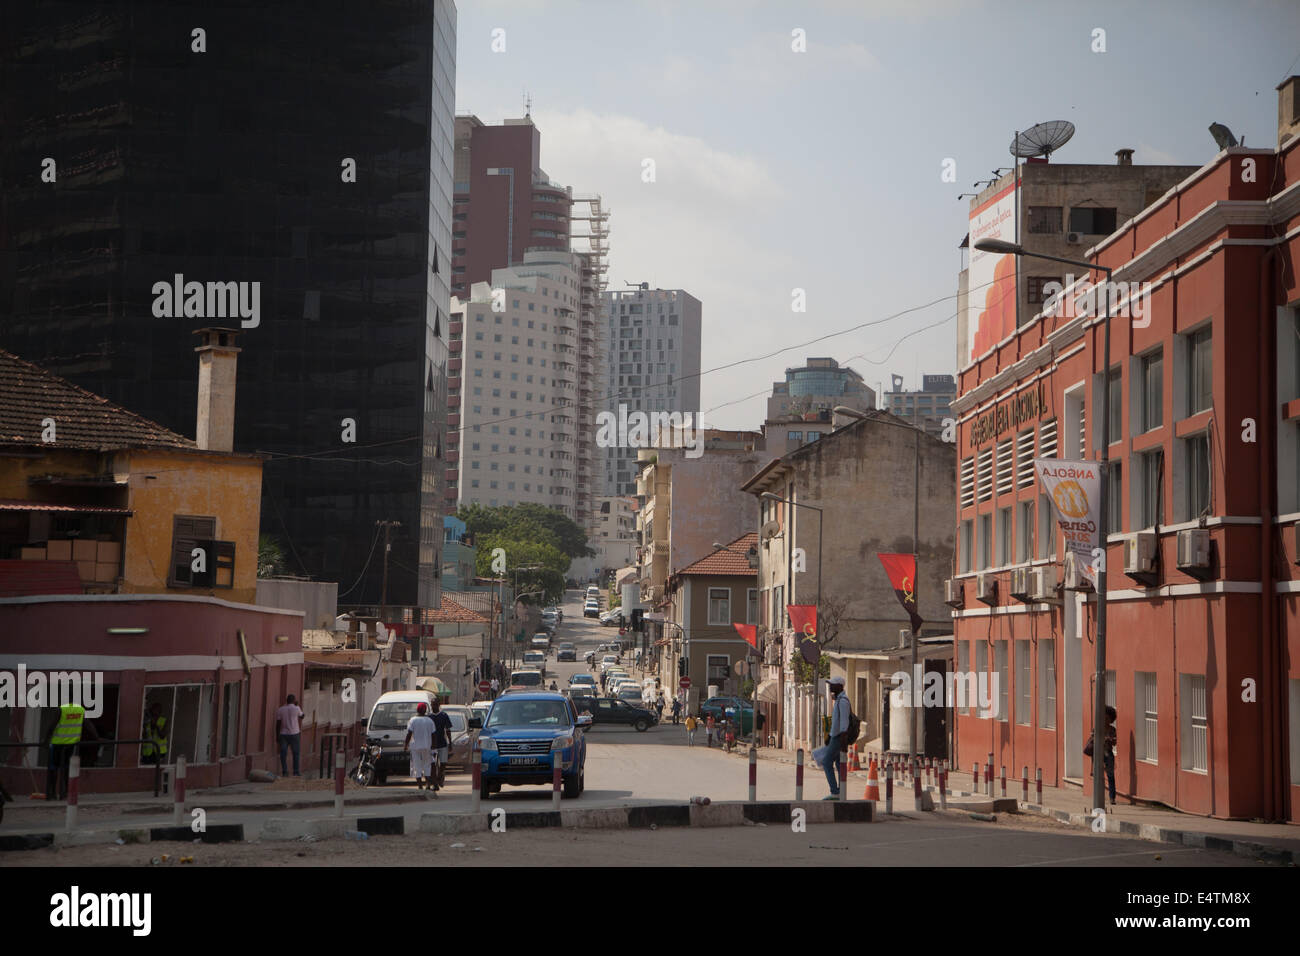 L'Angola, Luanda, la ville de Côte d'Afrique Vie quotidienne Banque D'Images